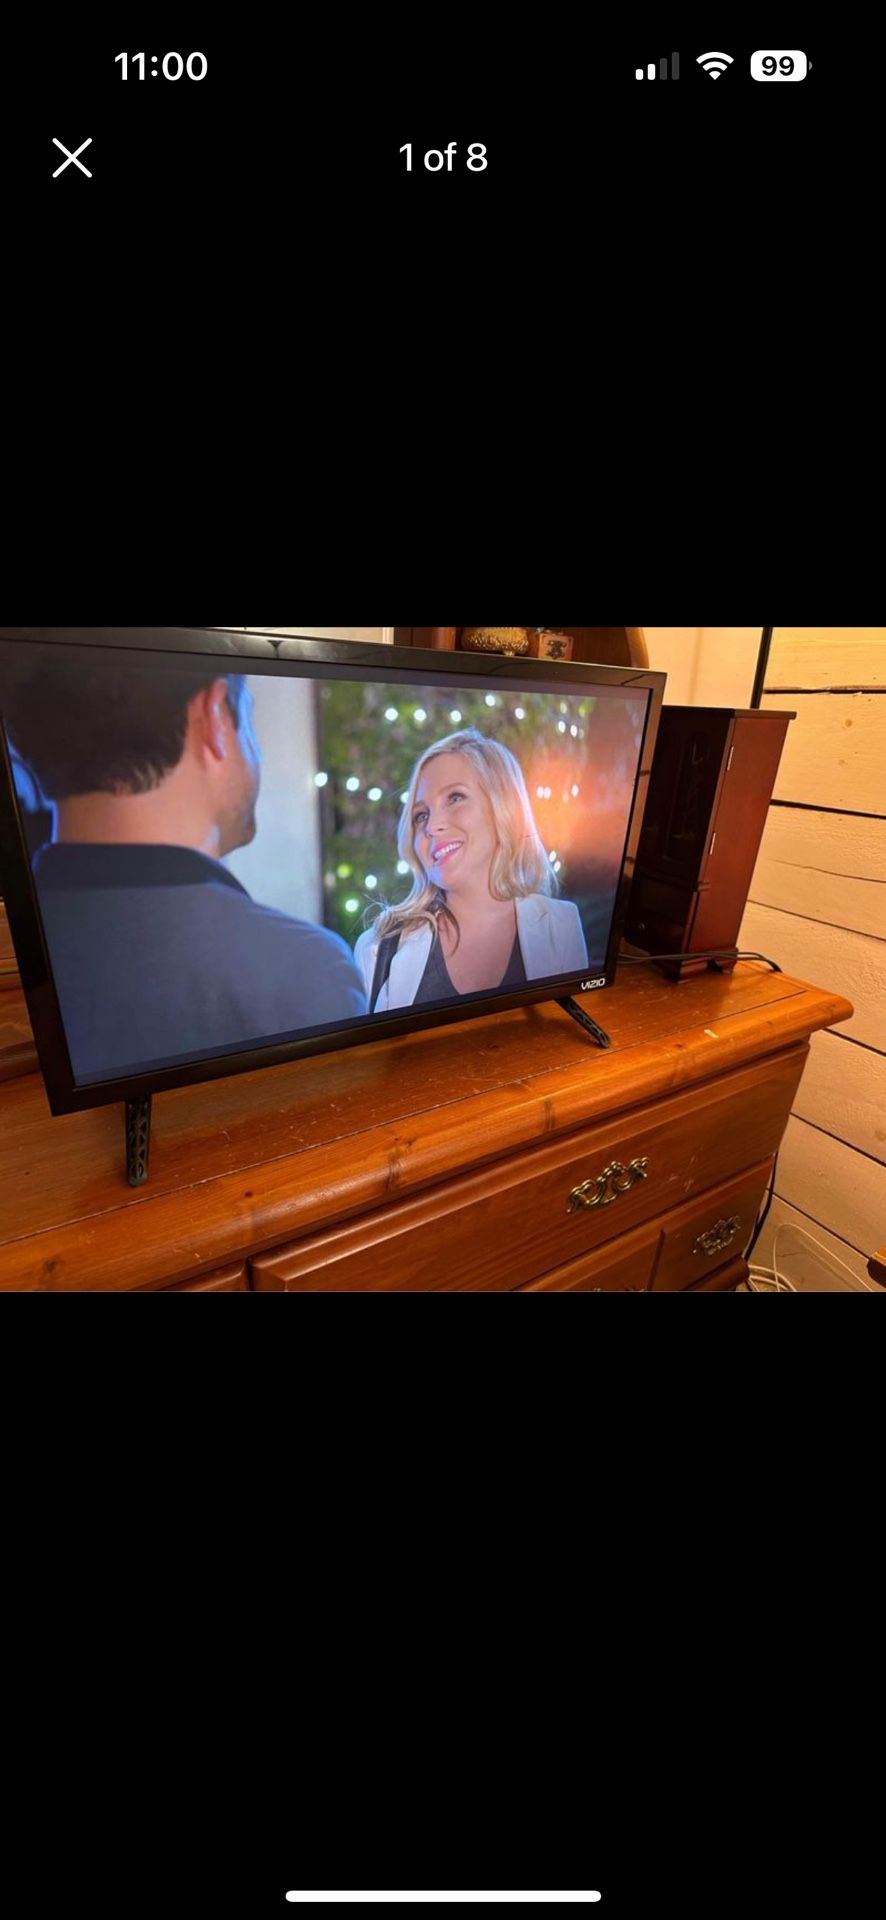 Vizio smart Tv 24 Inch Amazon fire Stick Included 